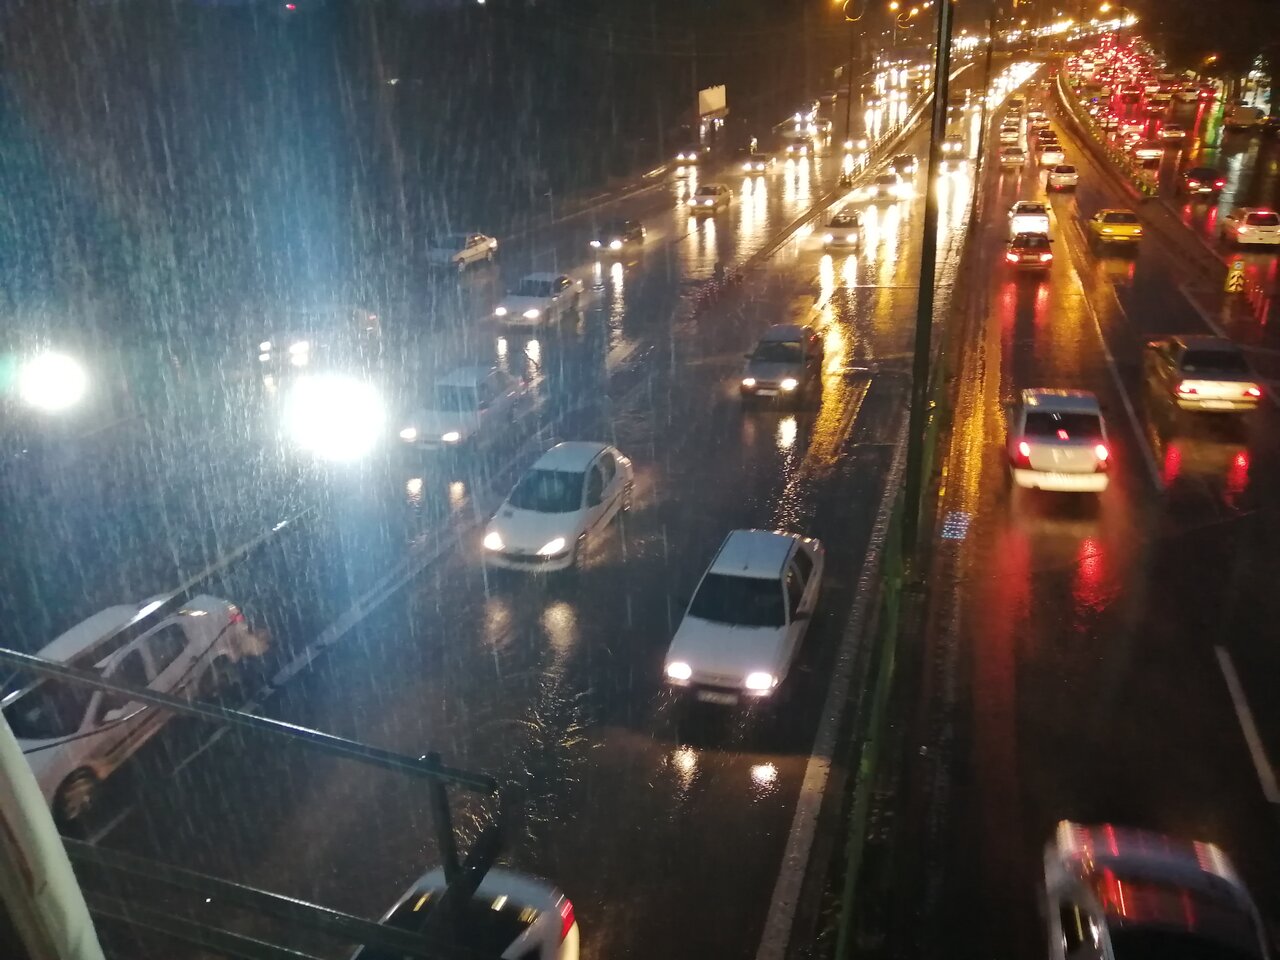 آب گرفتگی خیابان های همدان بر اثر بارش باران!